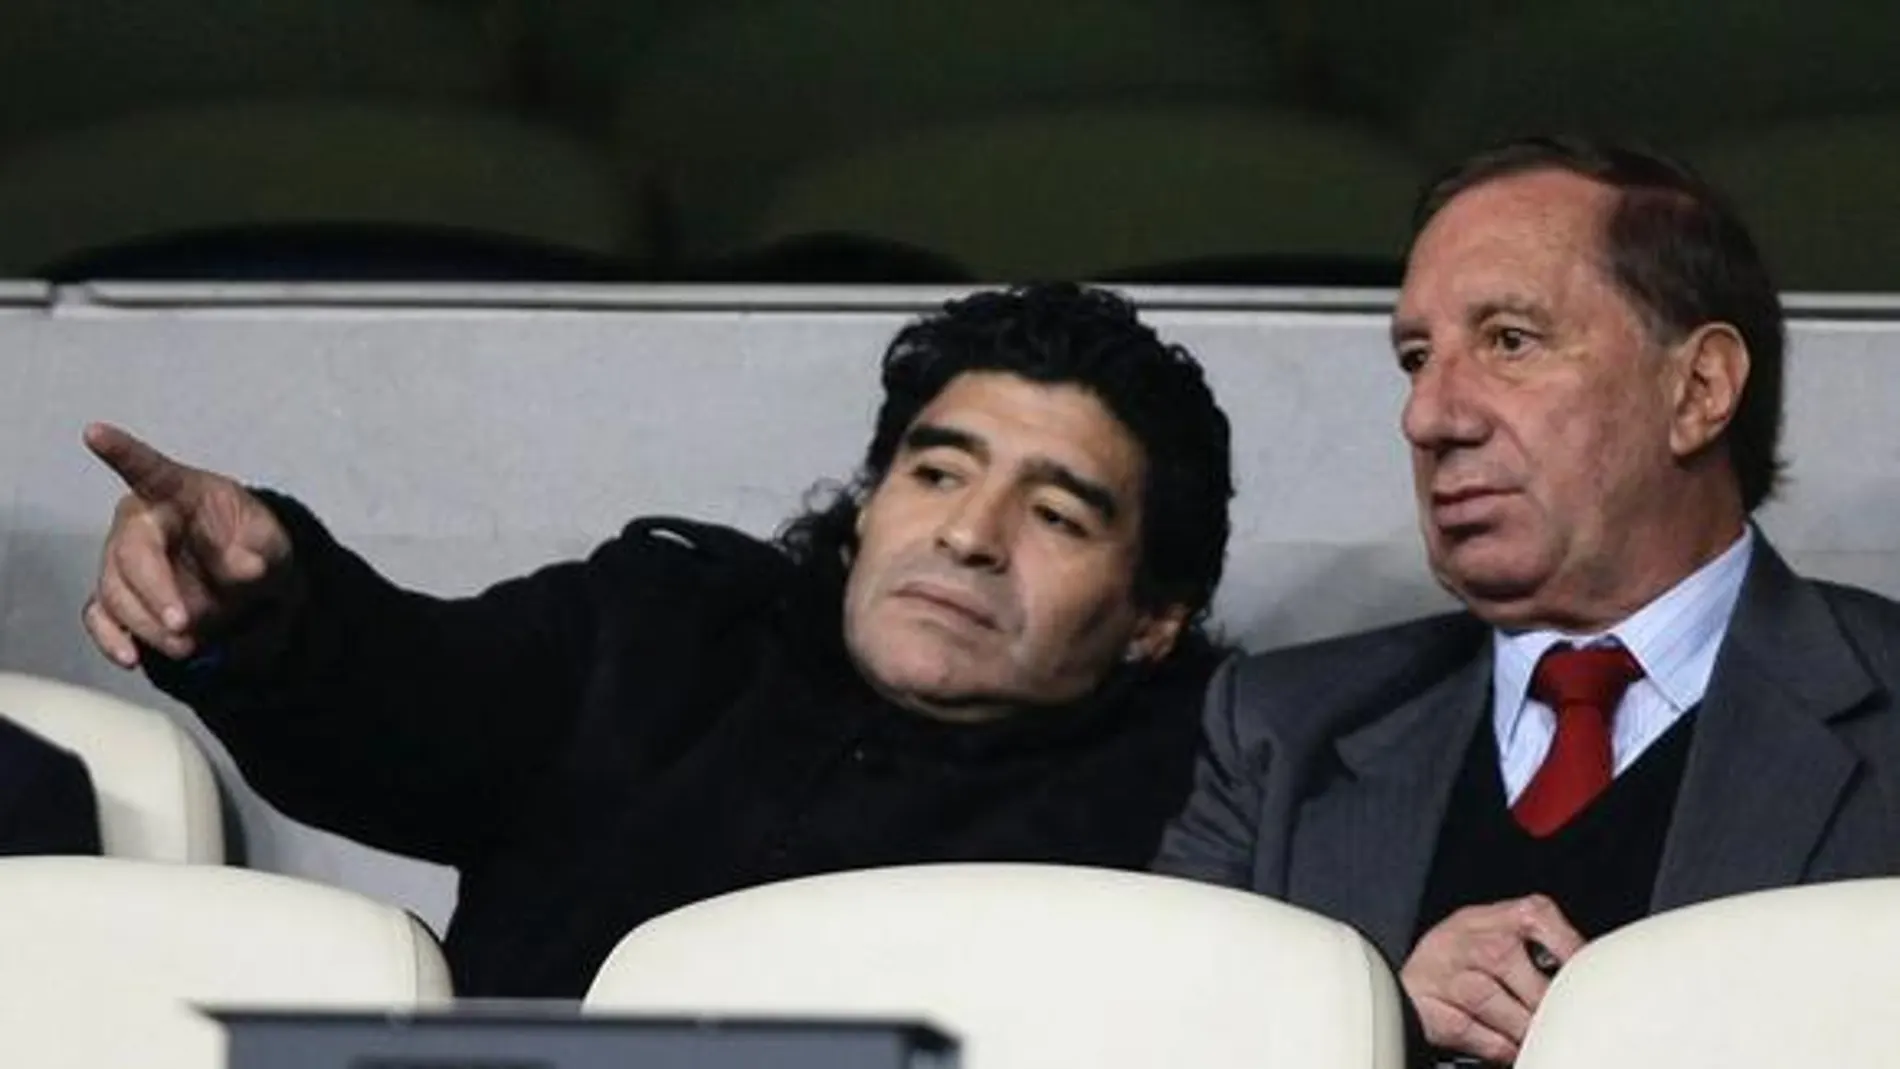 Carlos Bilardo y Maradona en una imagen de archivo